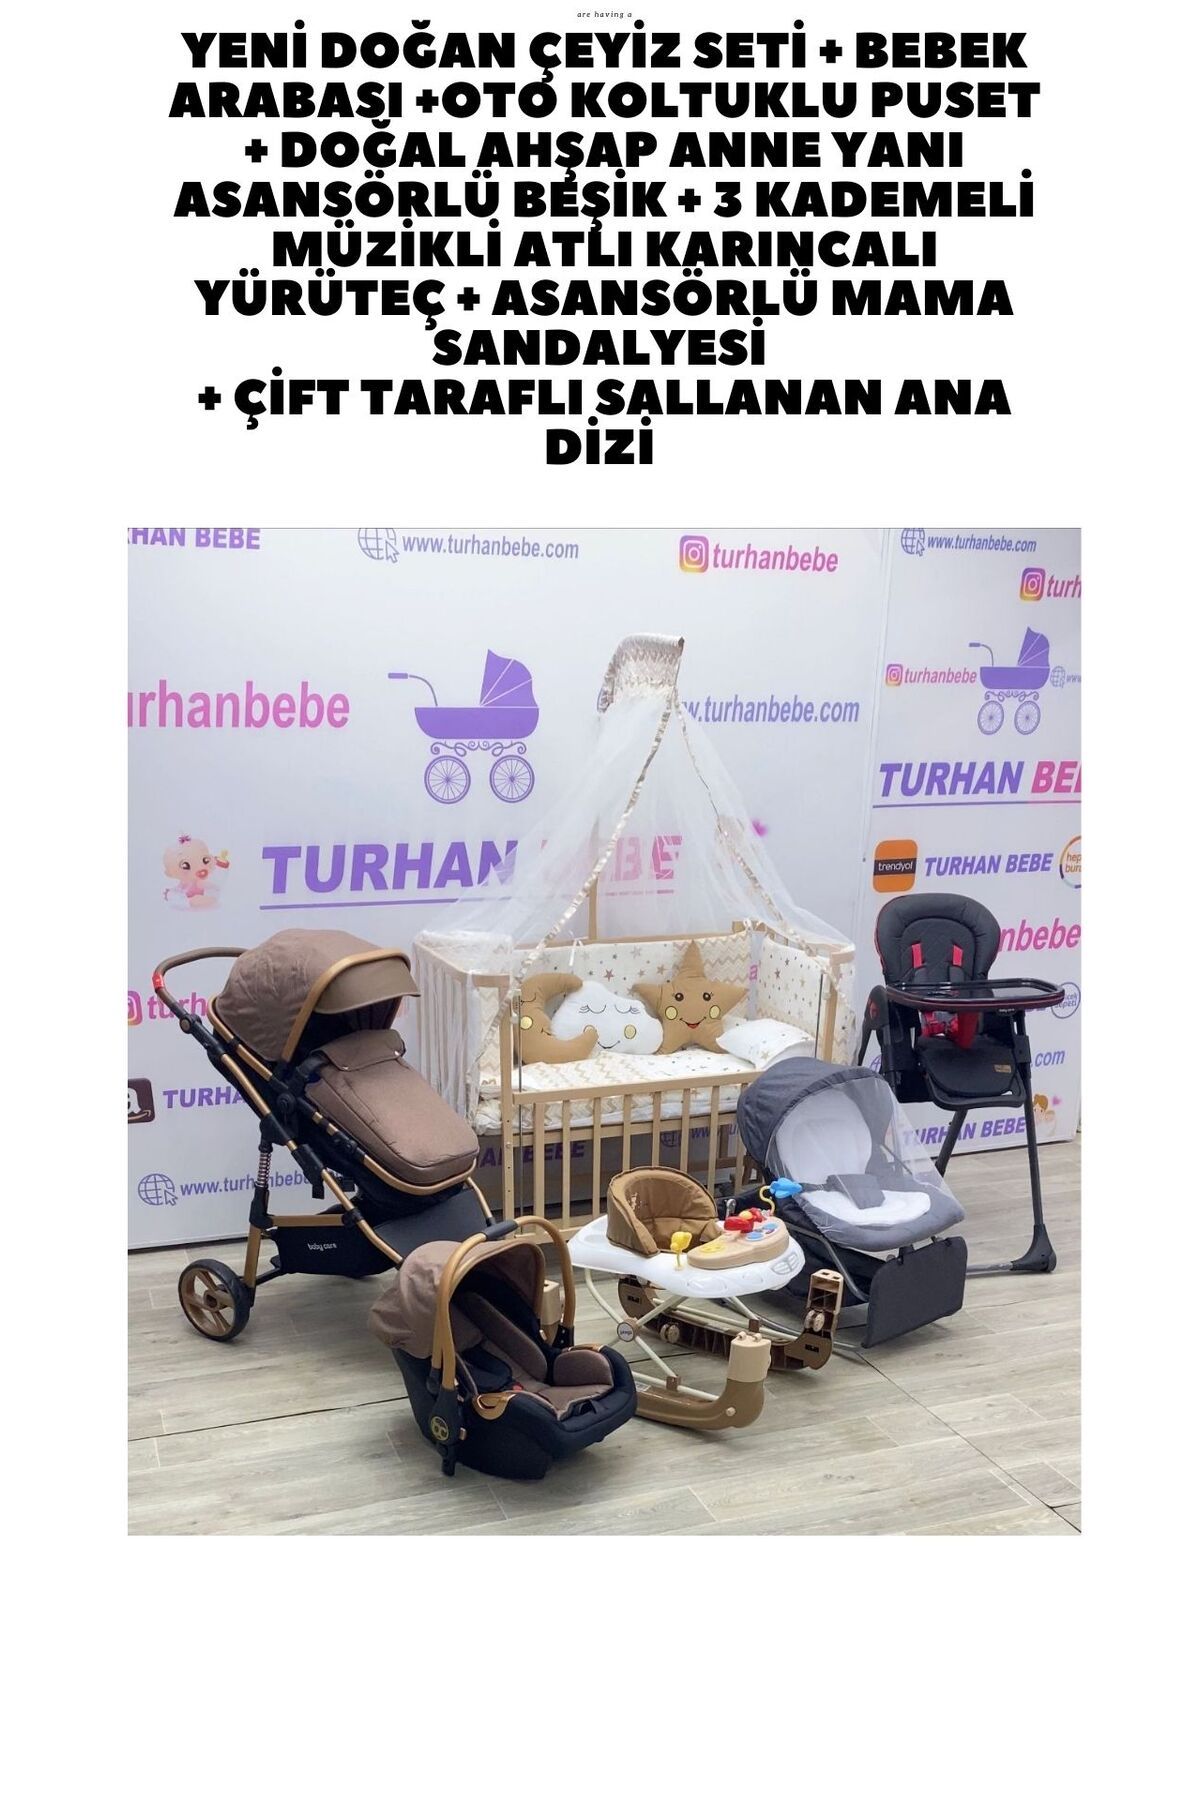 TURHAN BEBE Yeni Doğan Çeyiz Seti Bebek Arabası + Anne Yanı Beşik + Yürüteç +Mama Sandalyesi + ANA DİZİ